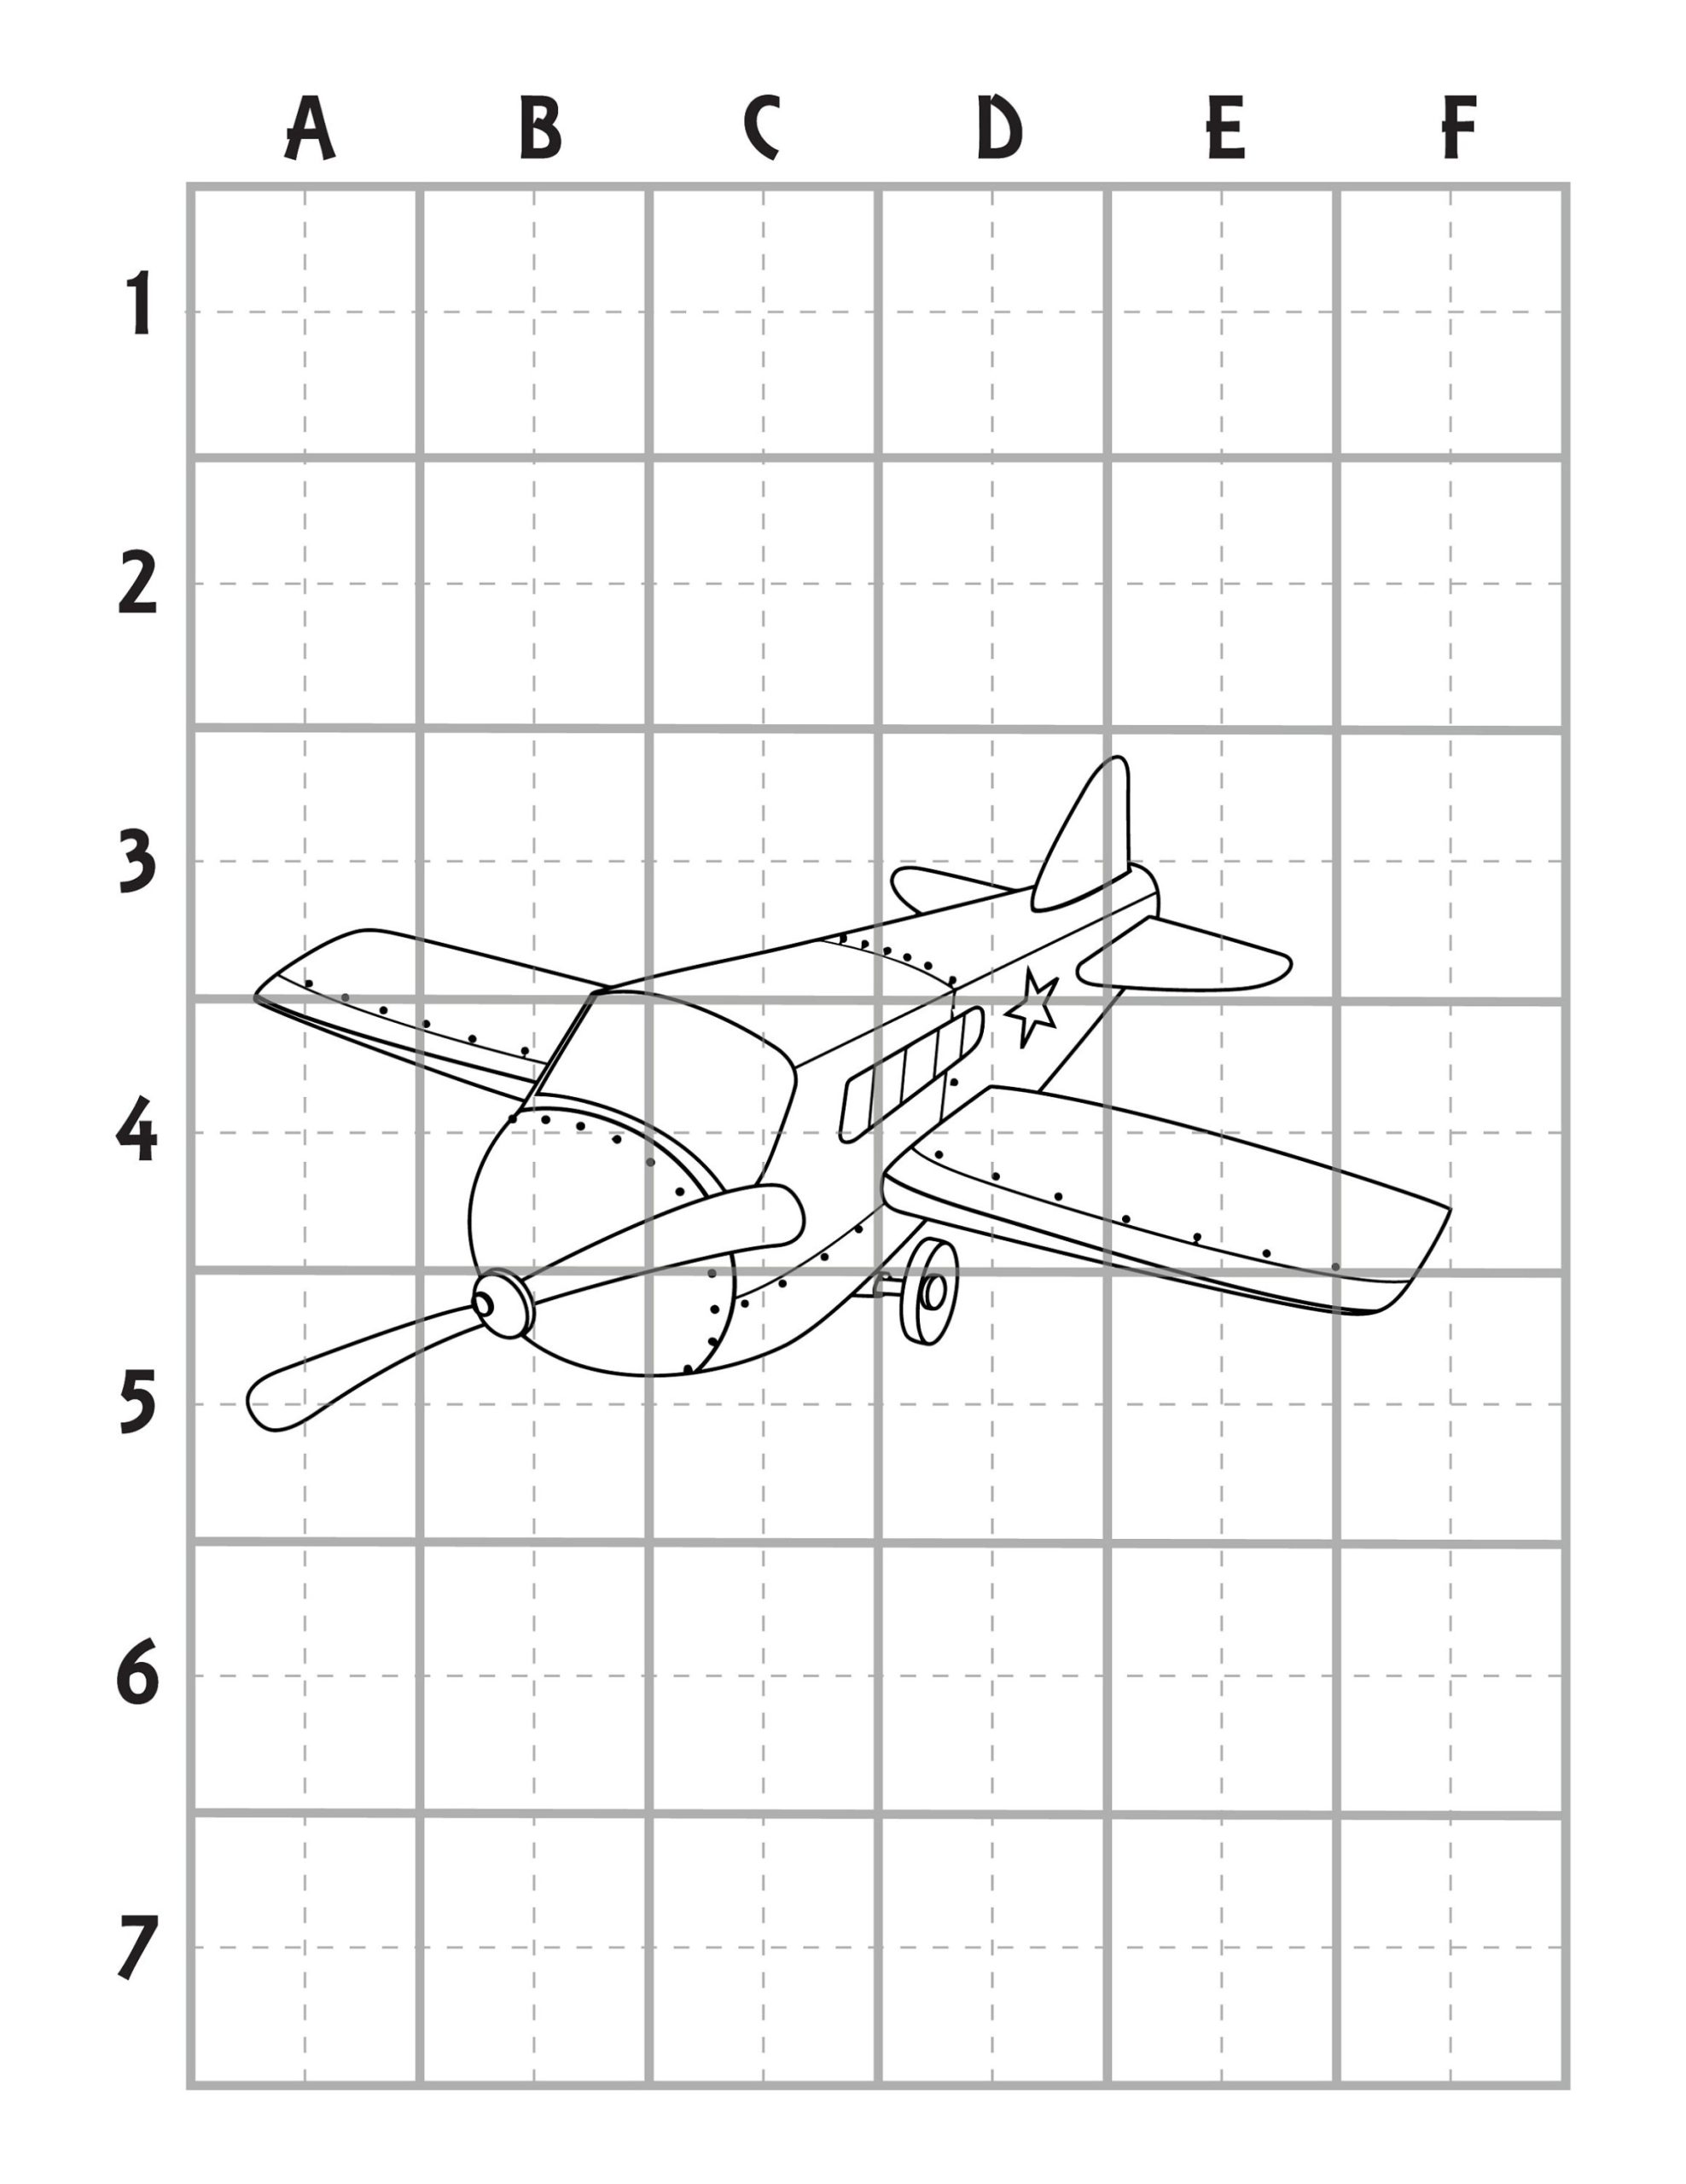 Wright-flyer Kleurplaat